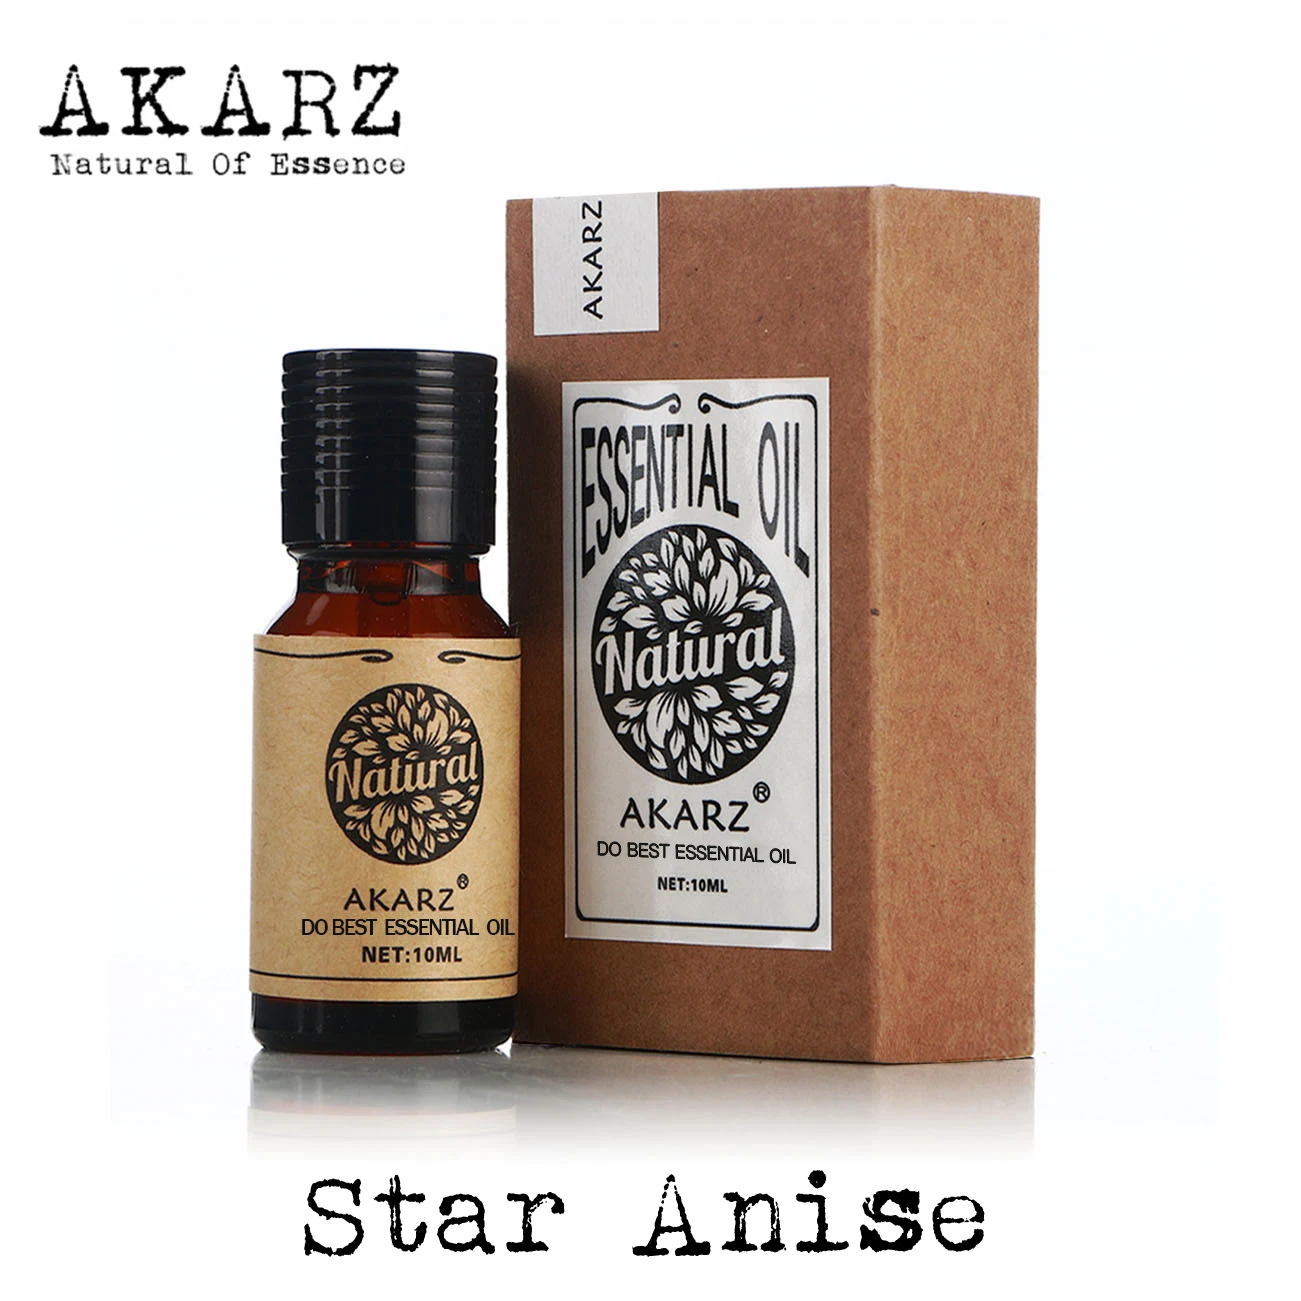 Star anise эфирное масло AKARZ натуральный жирности Косметика лампы в форме свечи мыло ароматы рукоделие своими руками одоранта сырье Star anise масло